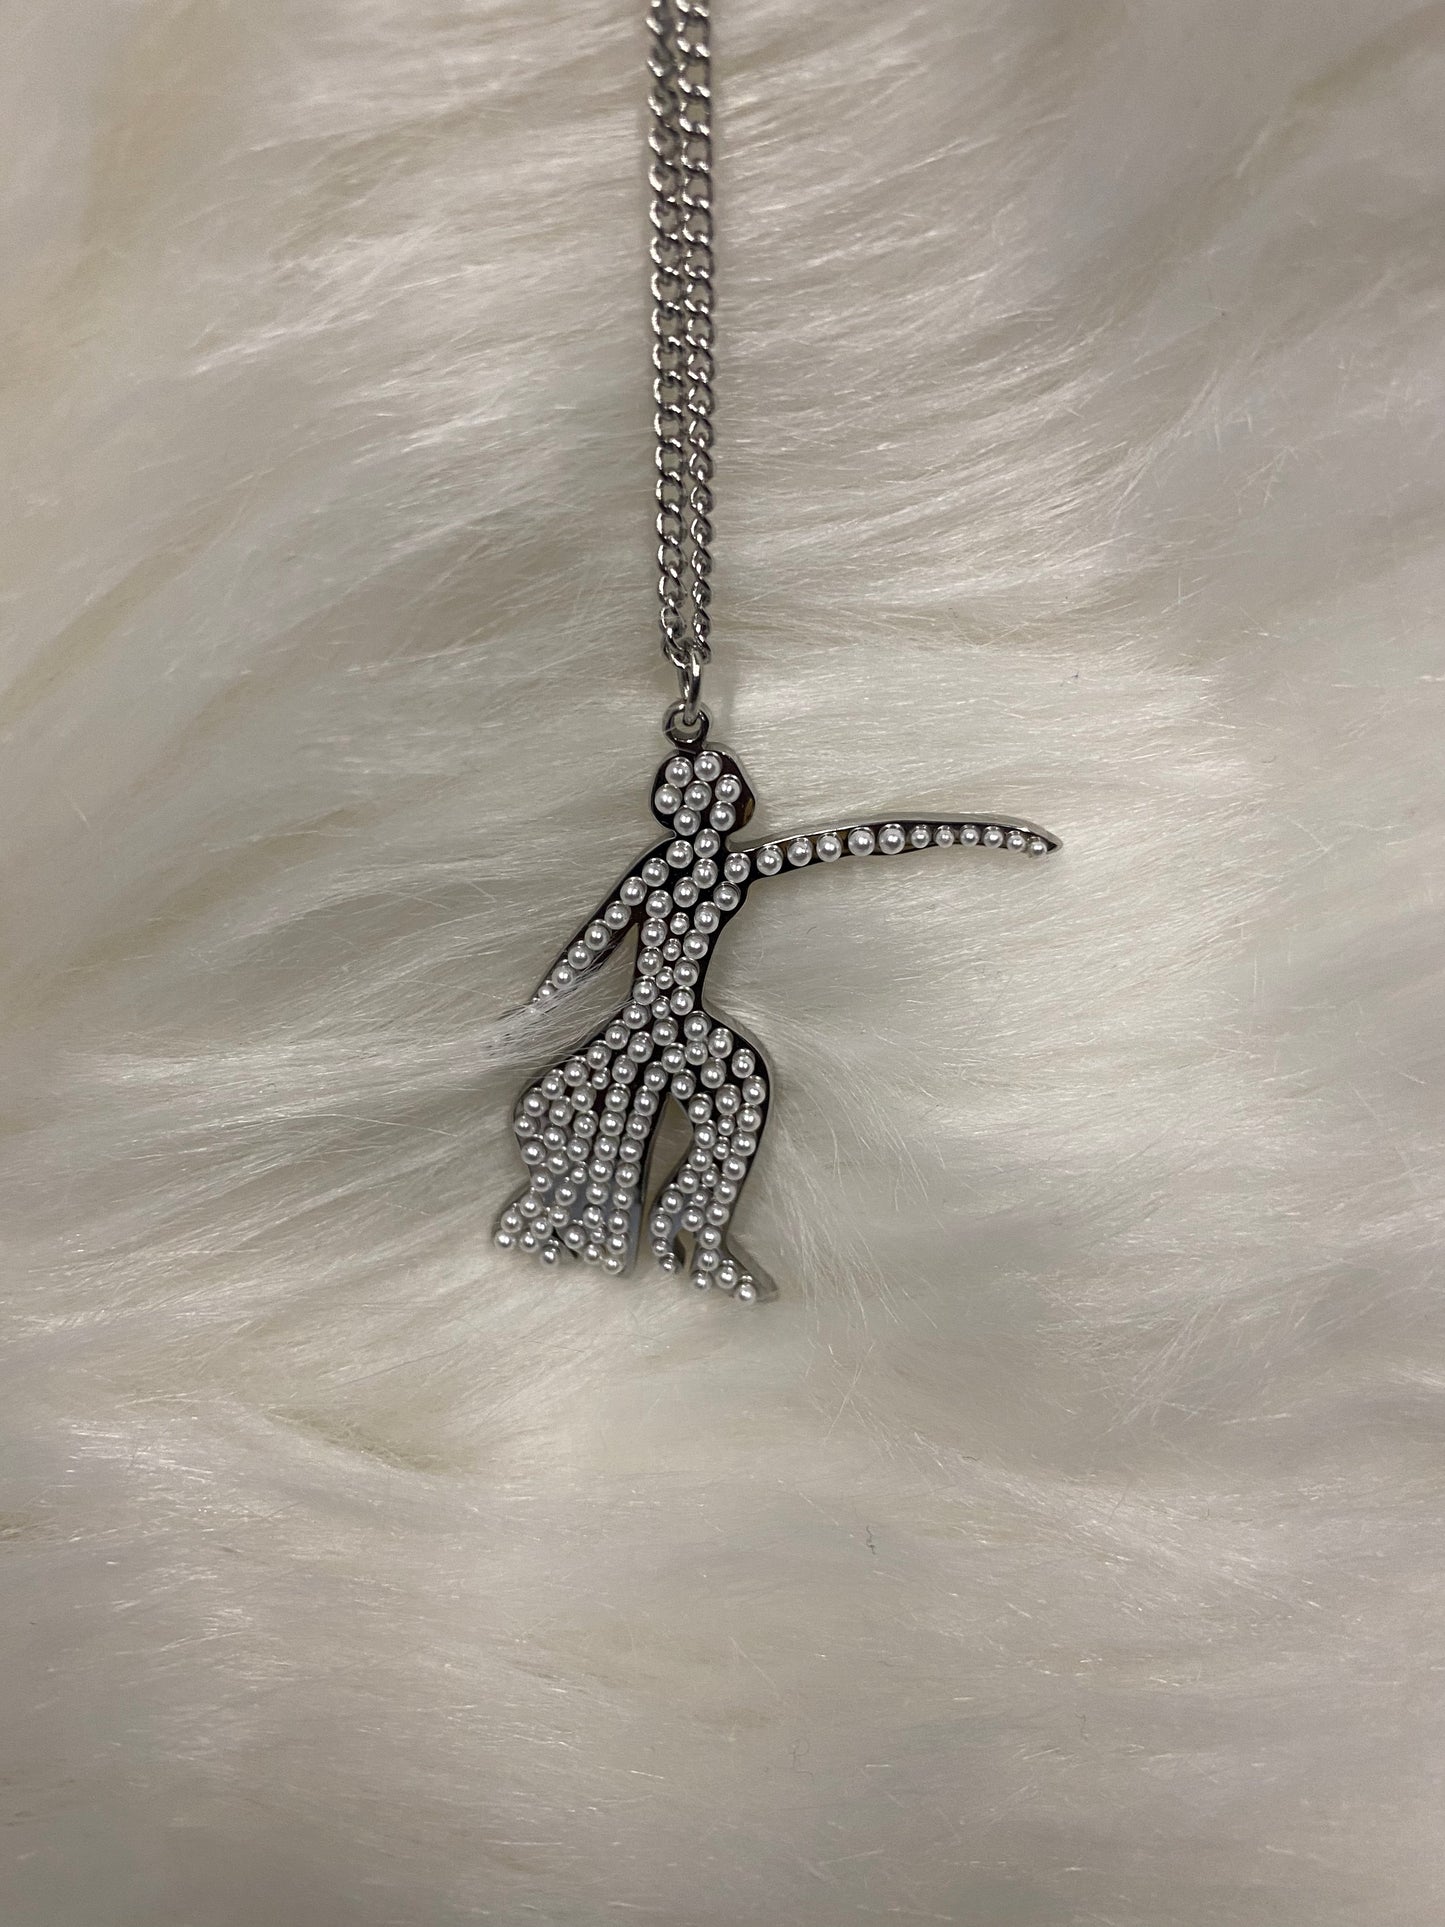 Delta Sigma Theta - Fortitude necklace